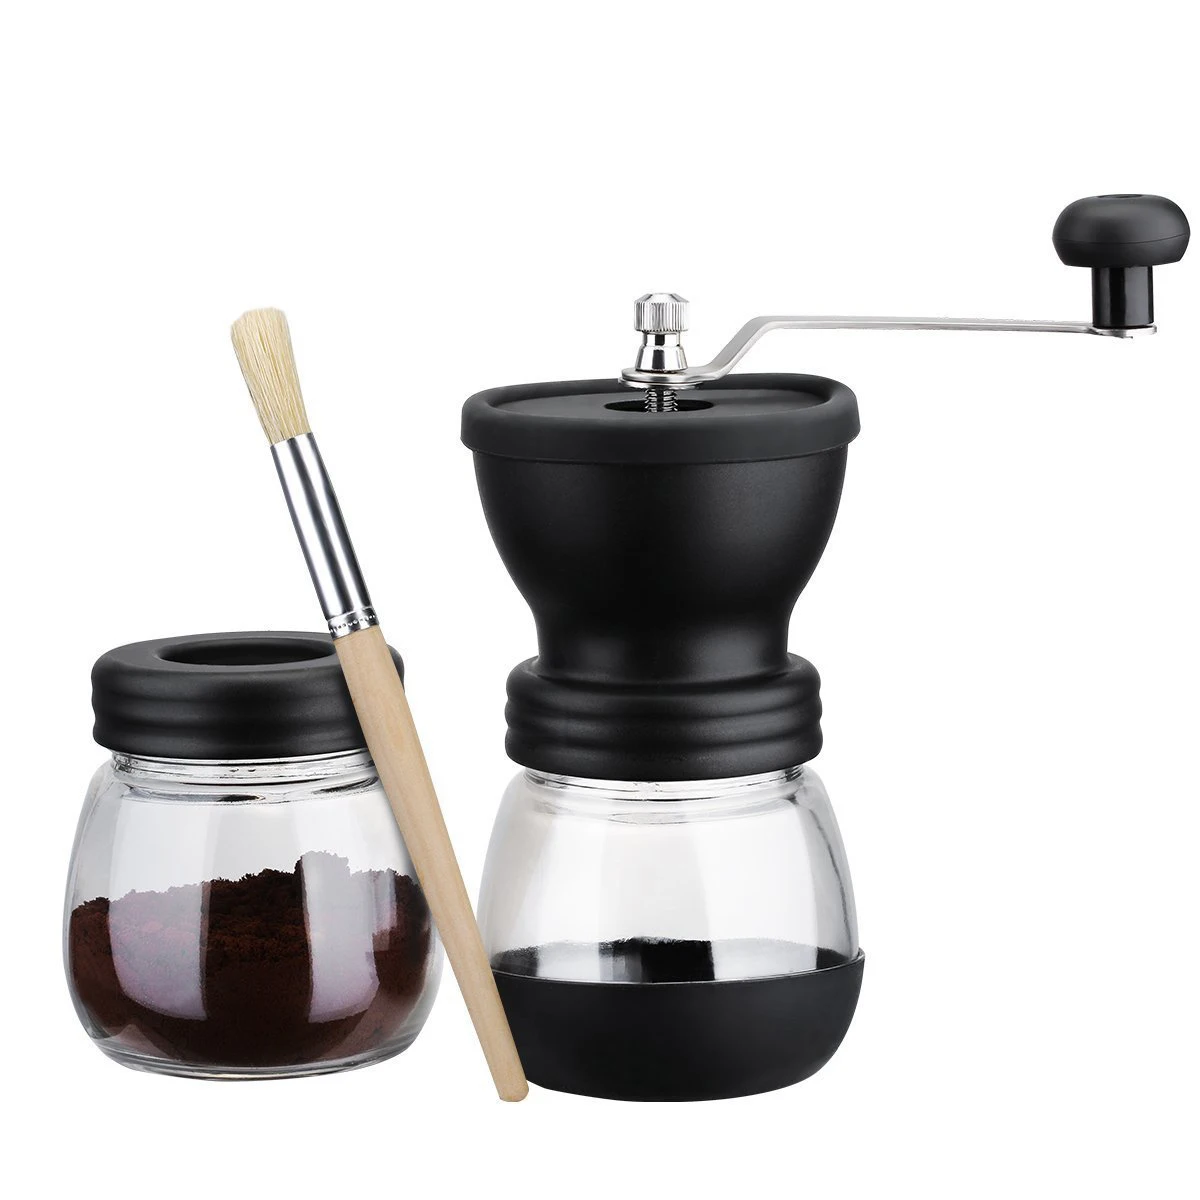 Ручная кофемолка с баночкой для хранения мягкой щеткой коническая керамическая заусенца Тихая с 2 стеклянными герметичными горшками портативная кофейная мельница инструмент - Цвет: Black